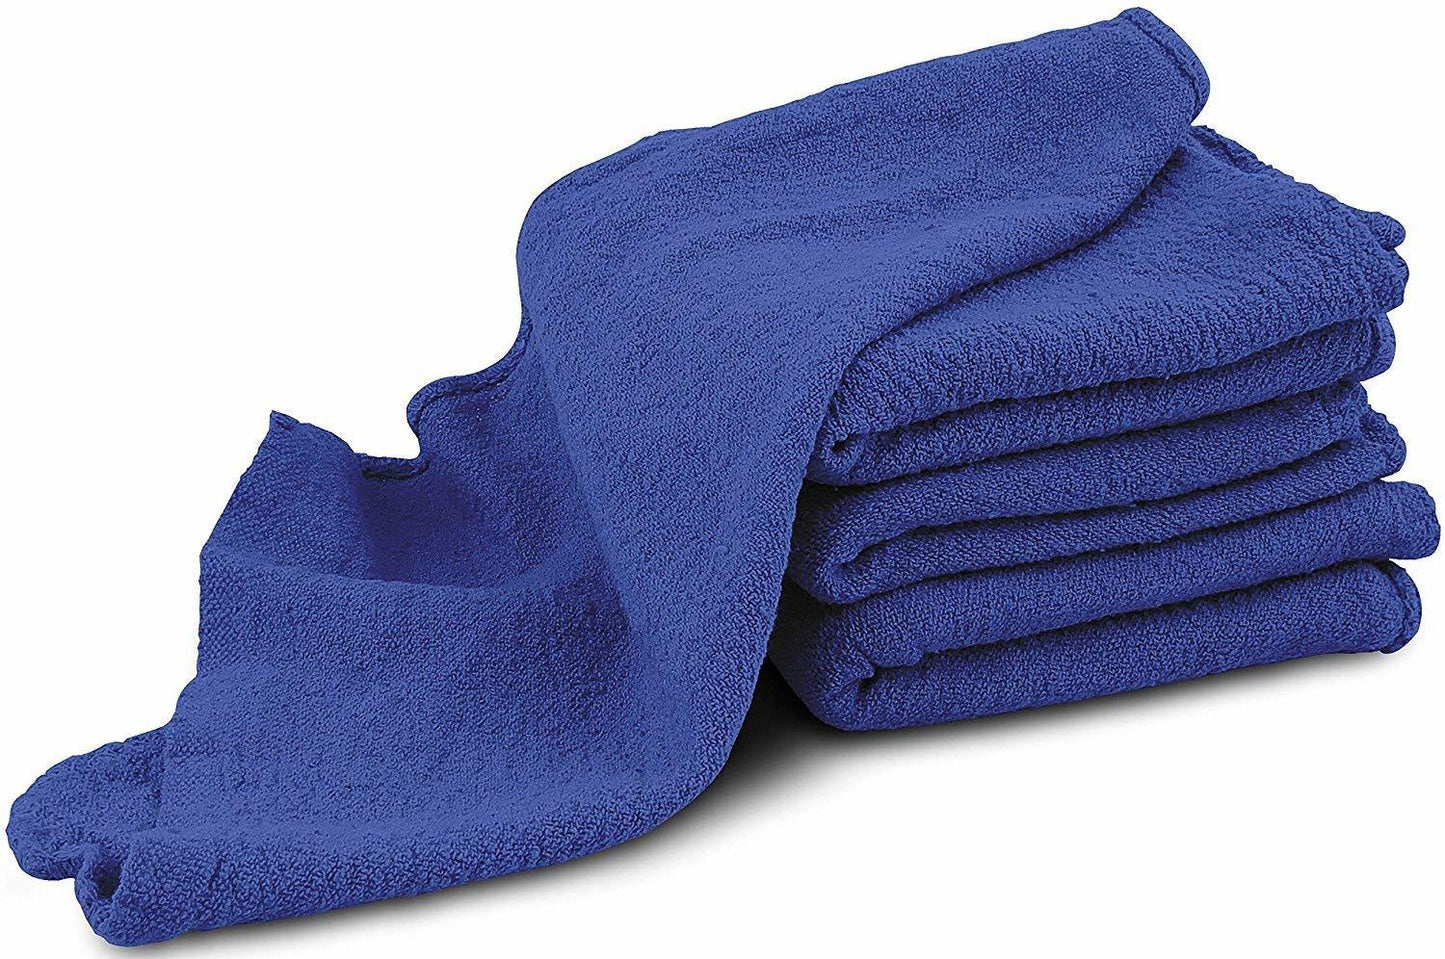 Blue Shop Towels (Case of 150)